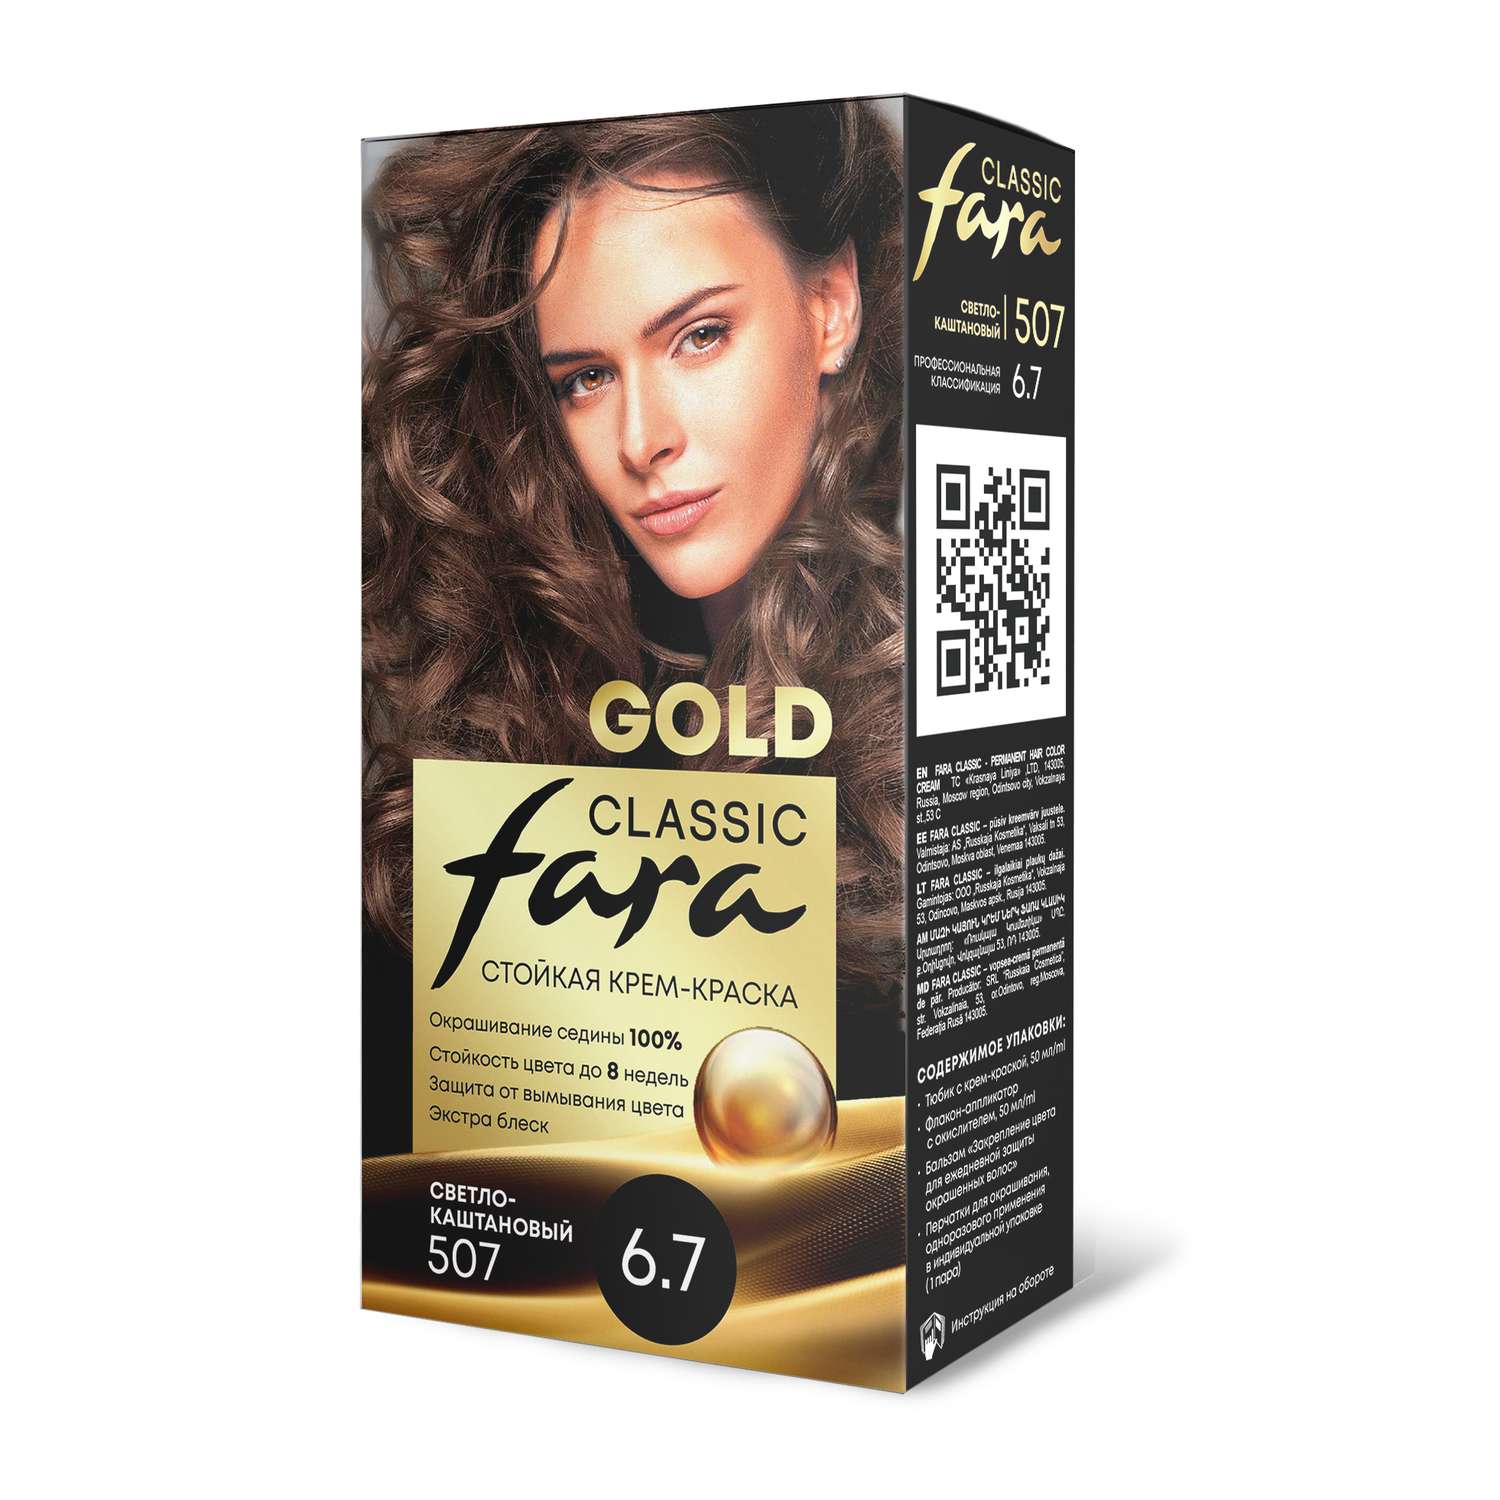 Краска для волос FARA стойкая Classic Gold 507 светло-каштановый 6.7 - фото 7